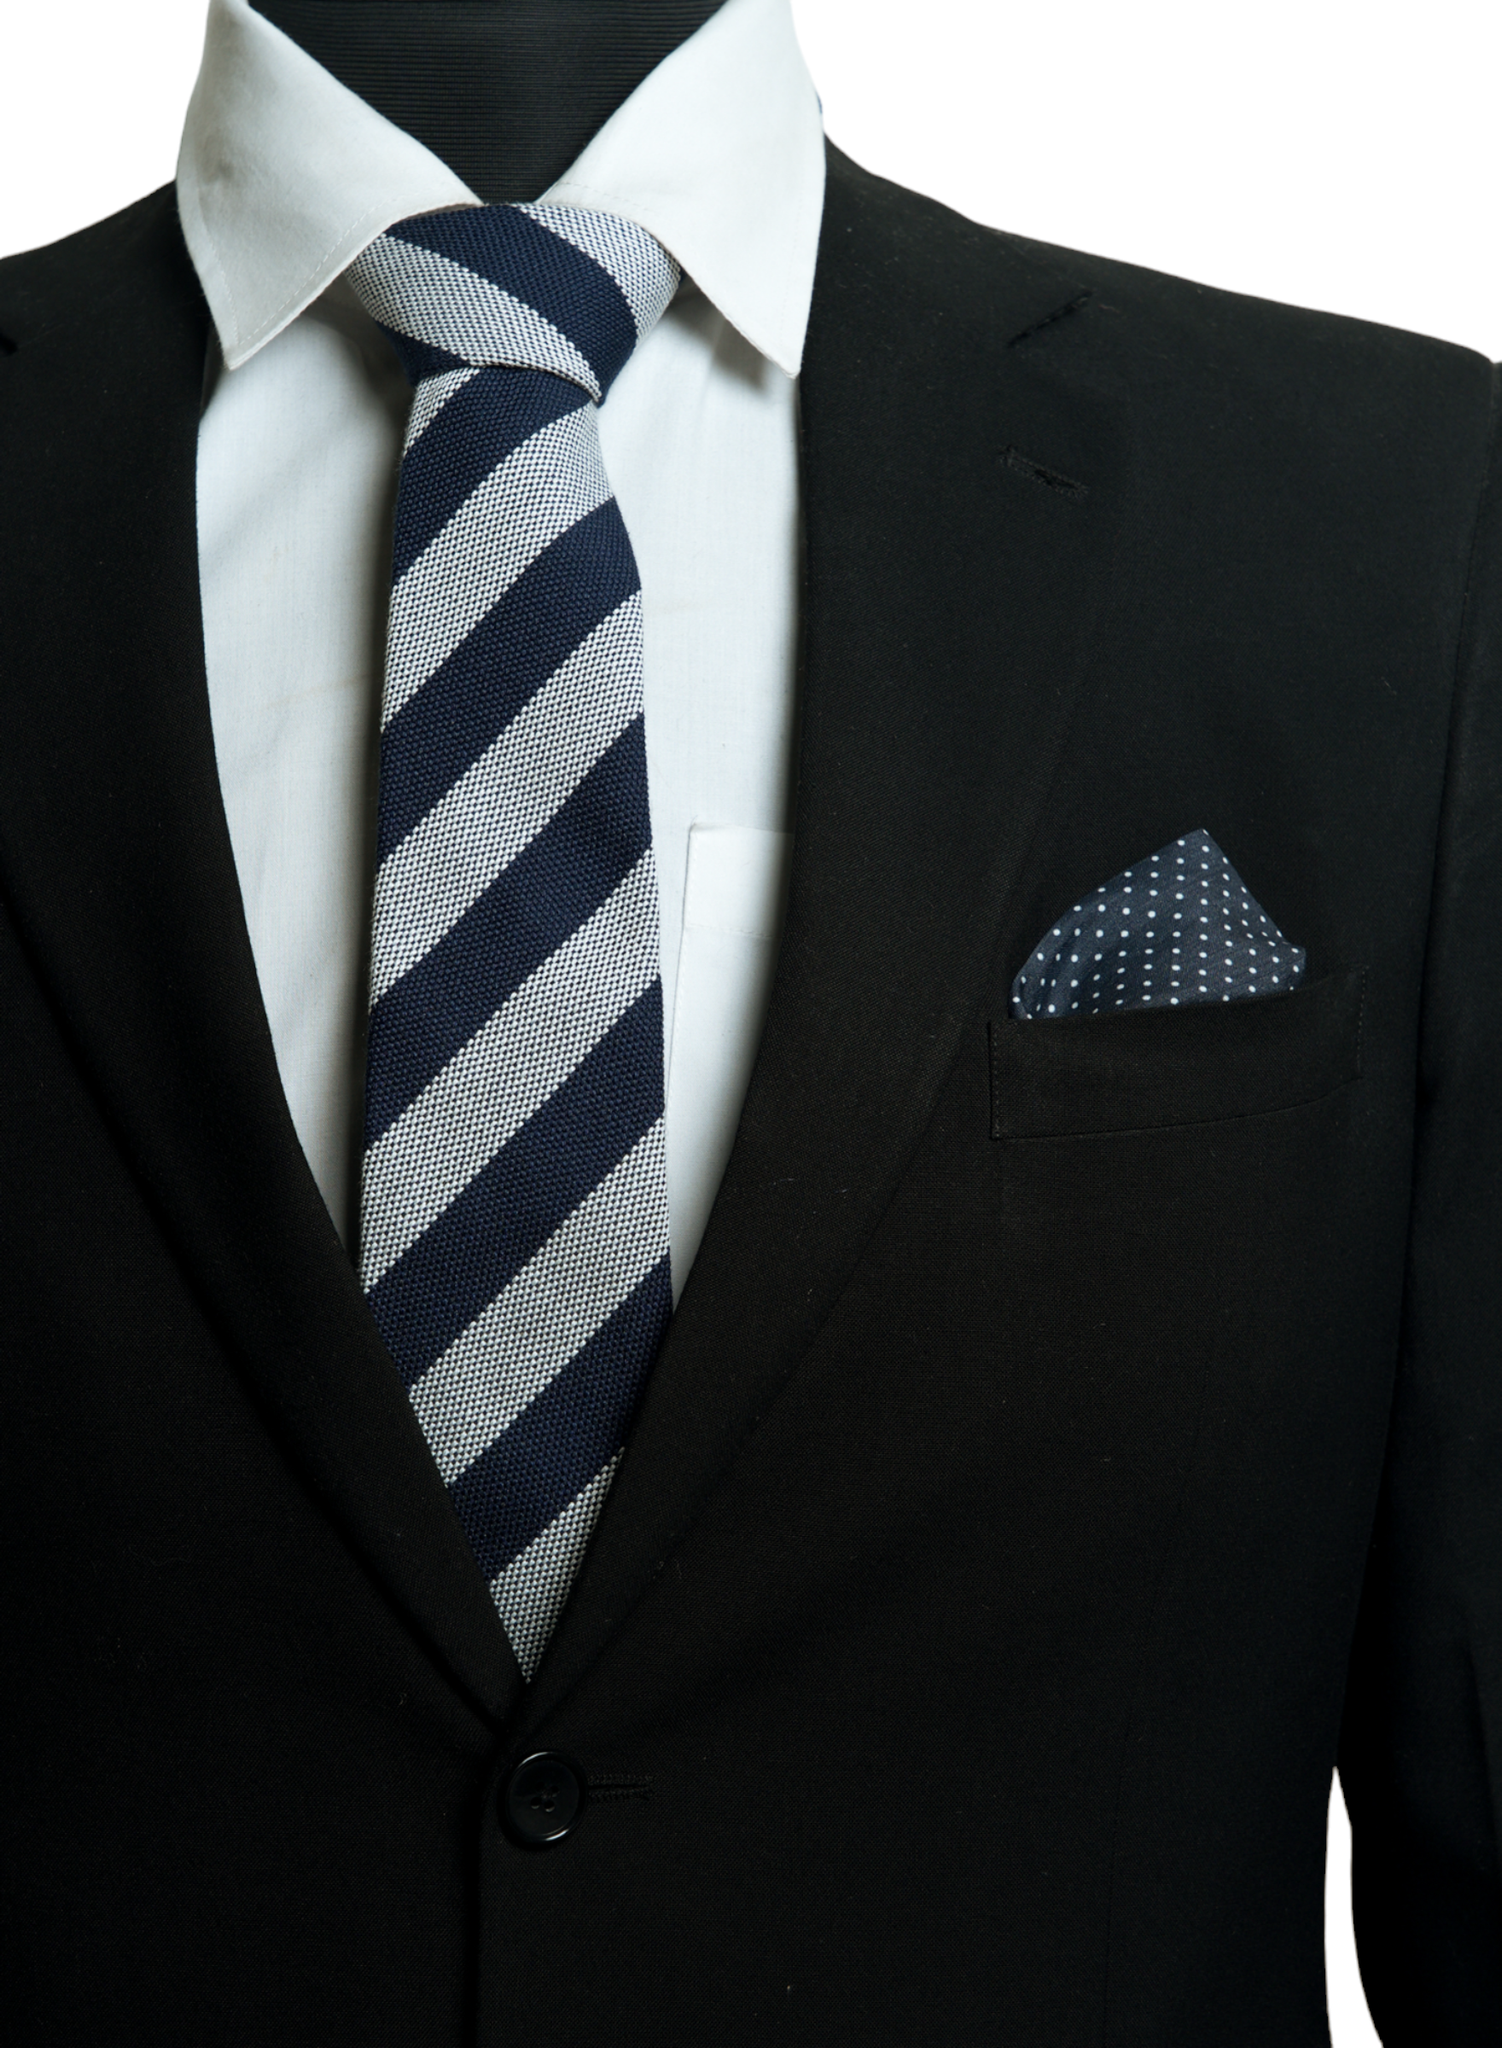 Chokore Spot On - Pocket Square &  Stripes (Navy & Silver) Necktie